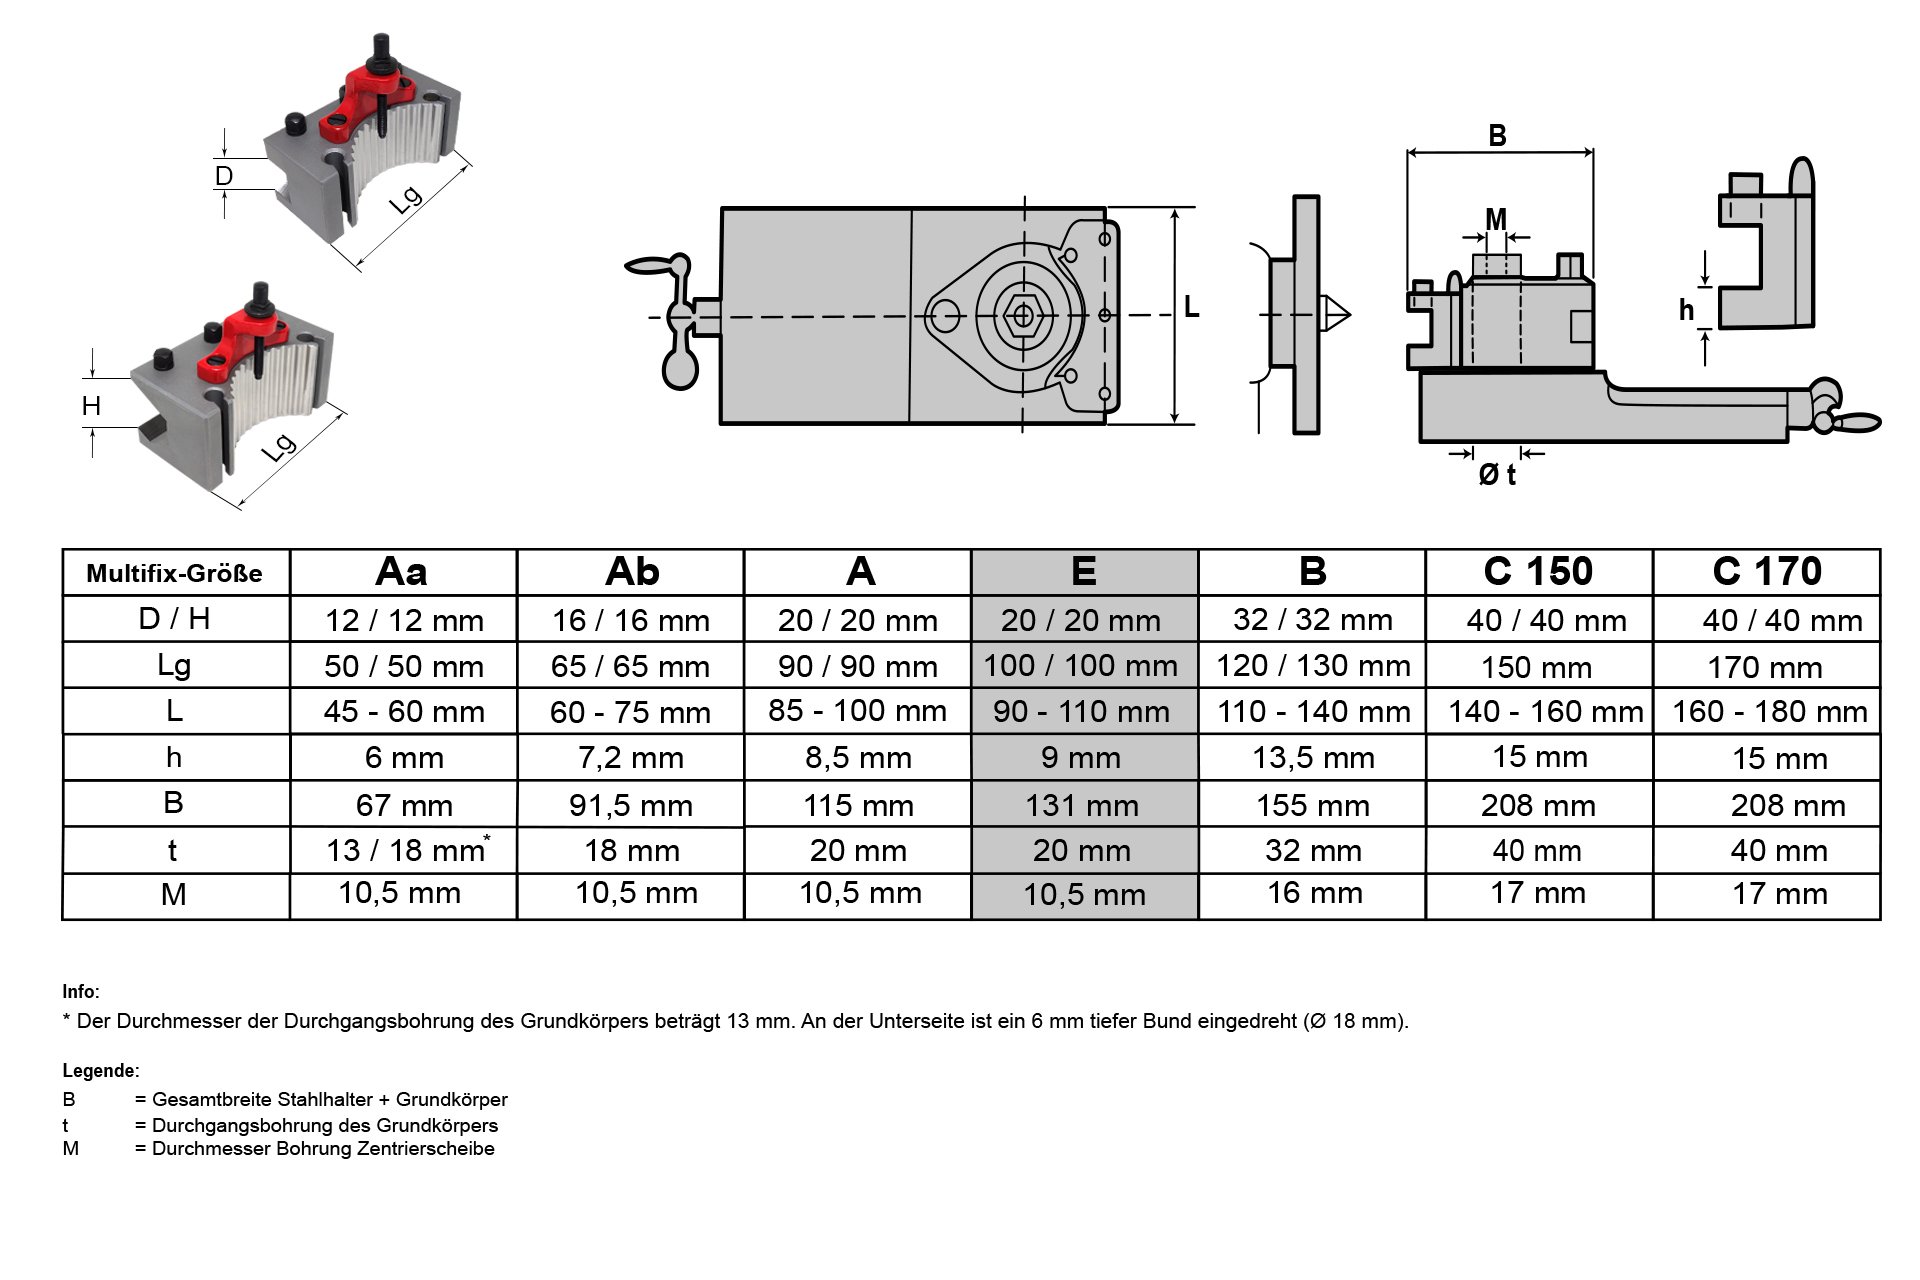 Schnellwechsel-Stahlhalter-Set, System "Multifix", Größe E